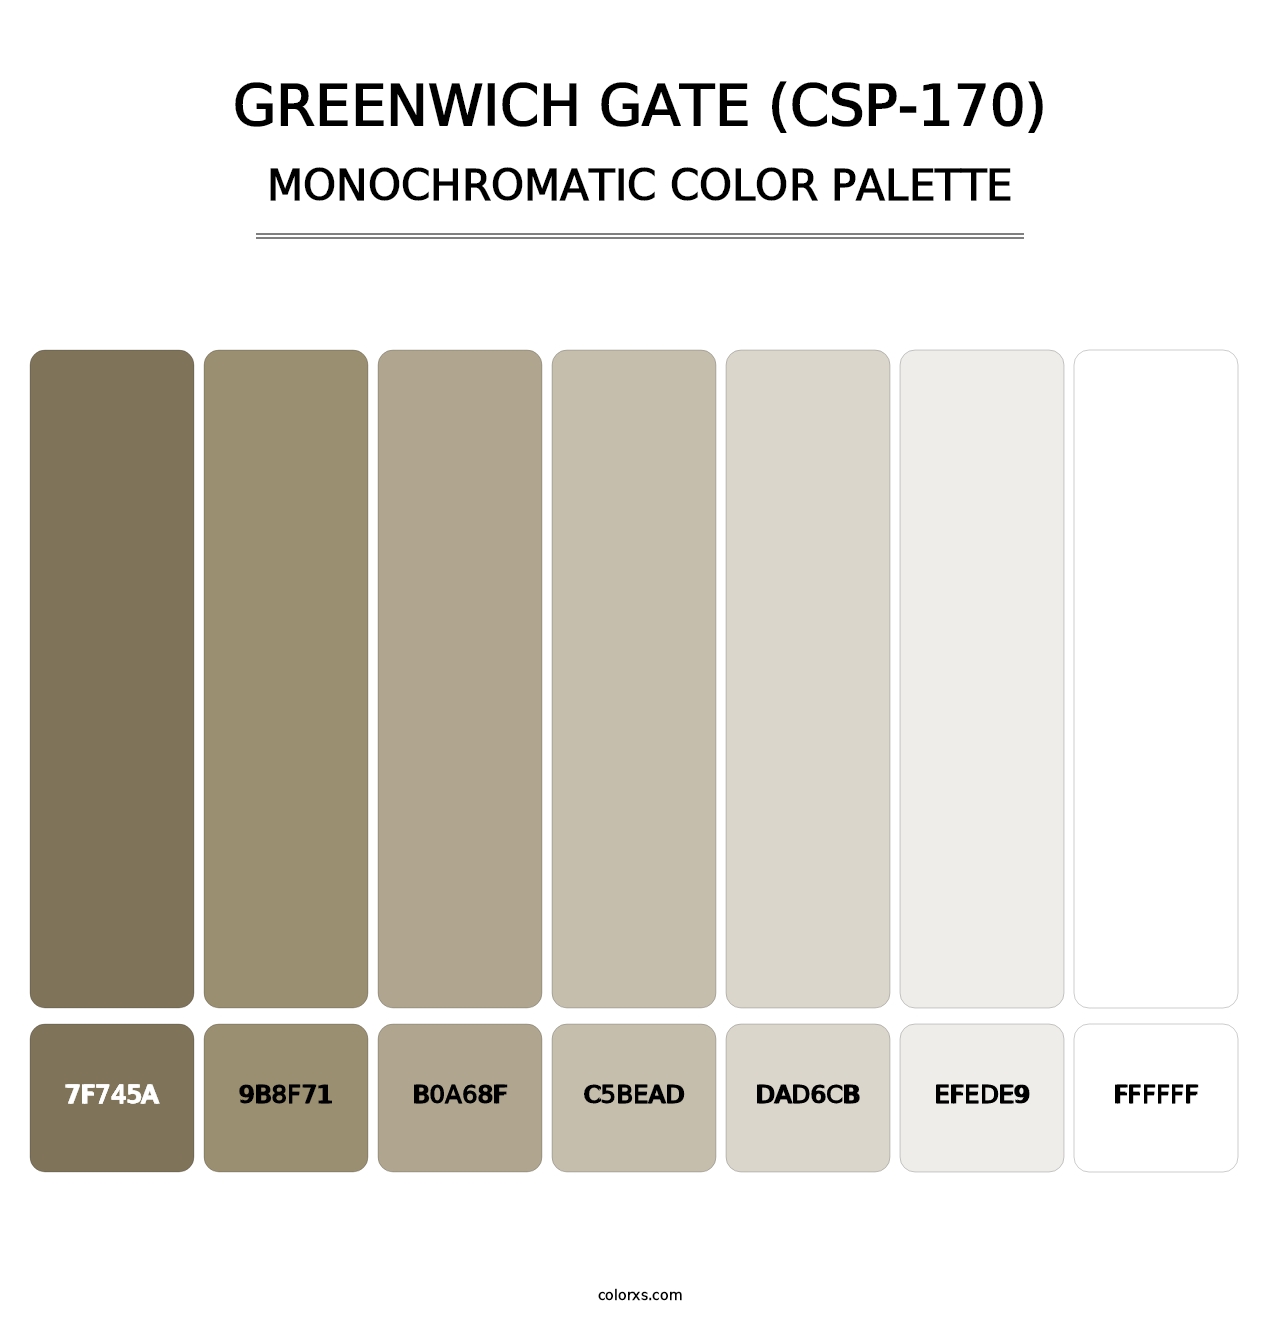 Greenwich Gate (CSP-170) - Monochromatic Color Palette